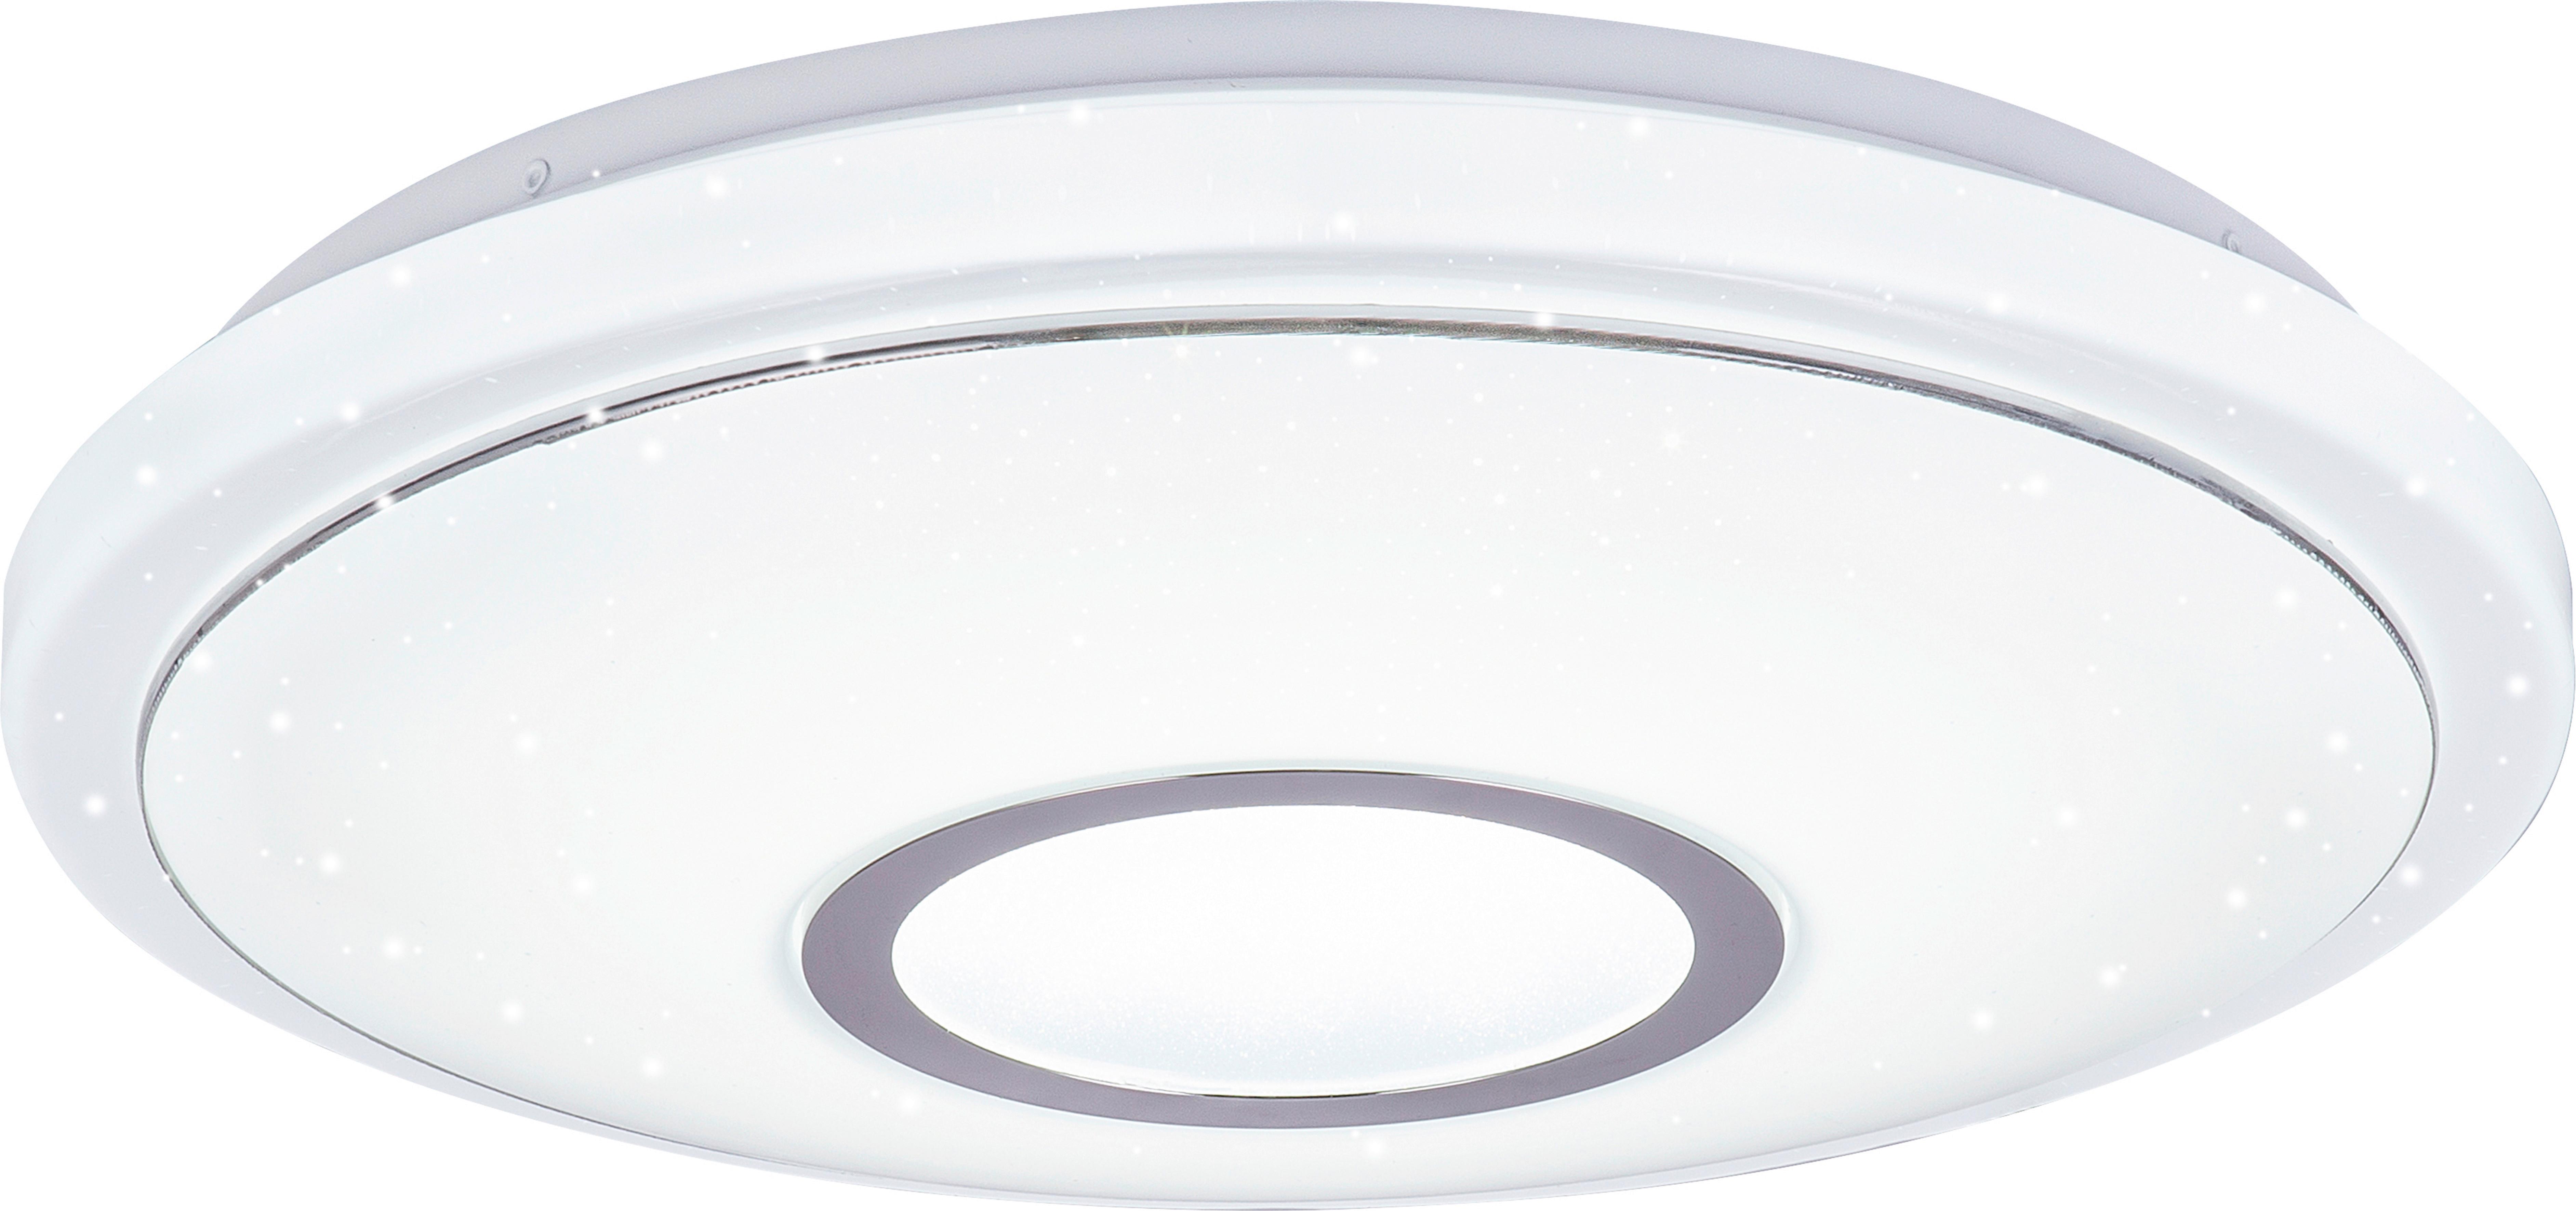 LED-Deckenleuchte Ross max. 16 Watt - Weiss, Konventionell, Kunststoff/Metall (40/9cm) - Premium Living